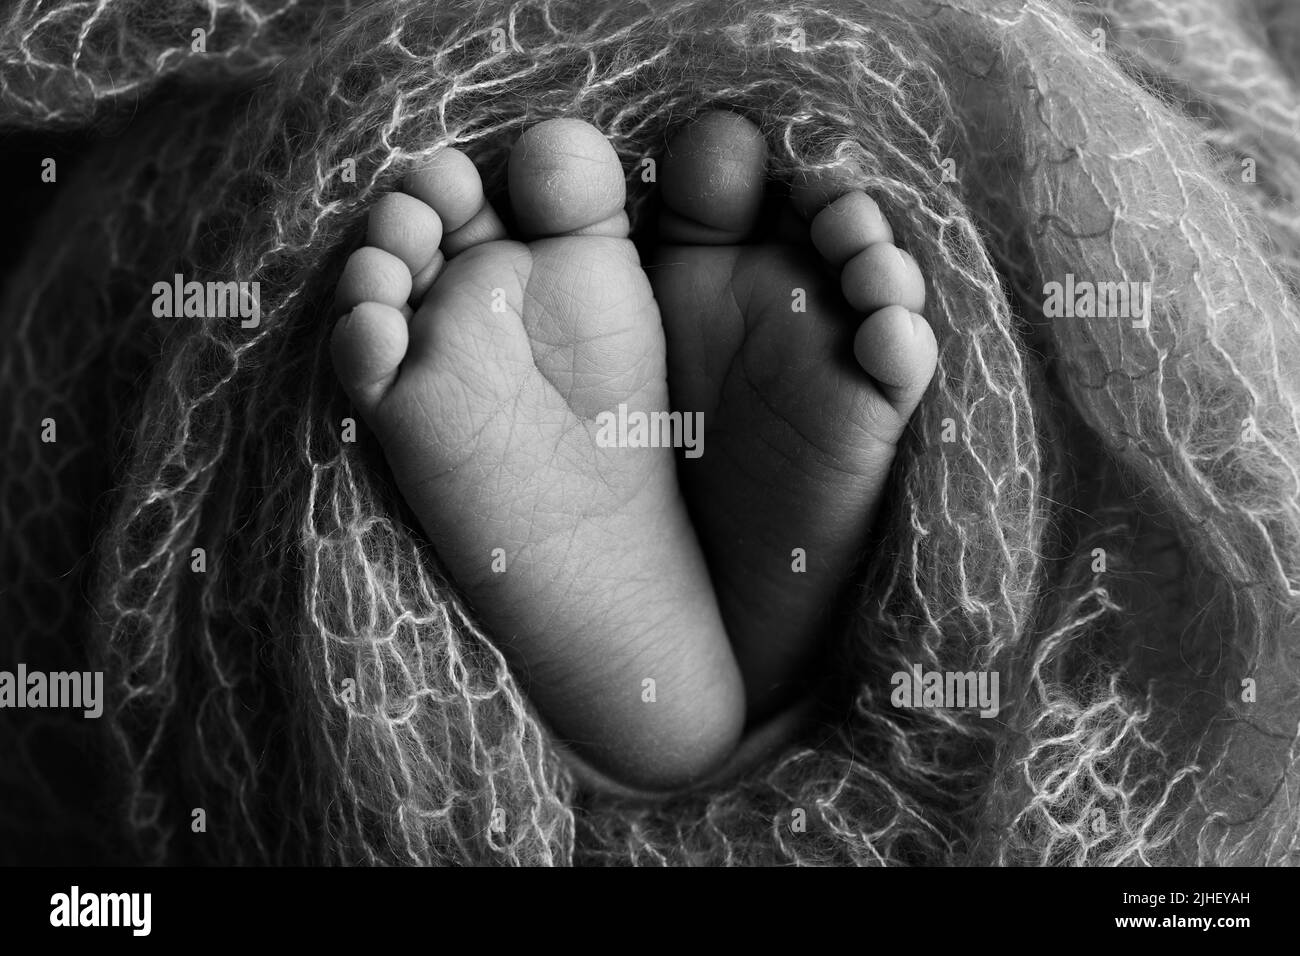 Nahaufnahme von Zehen, Fersen und Füßen eines Babys.der kleine Fuß eines Neugeborenen. Schwarzweiß-Makrofotografie im Studio Stockfoto